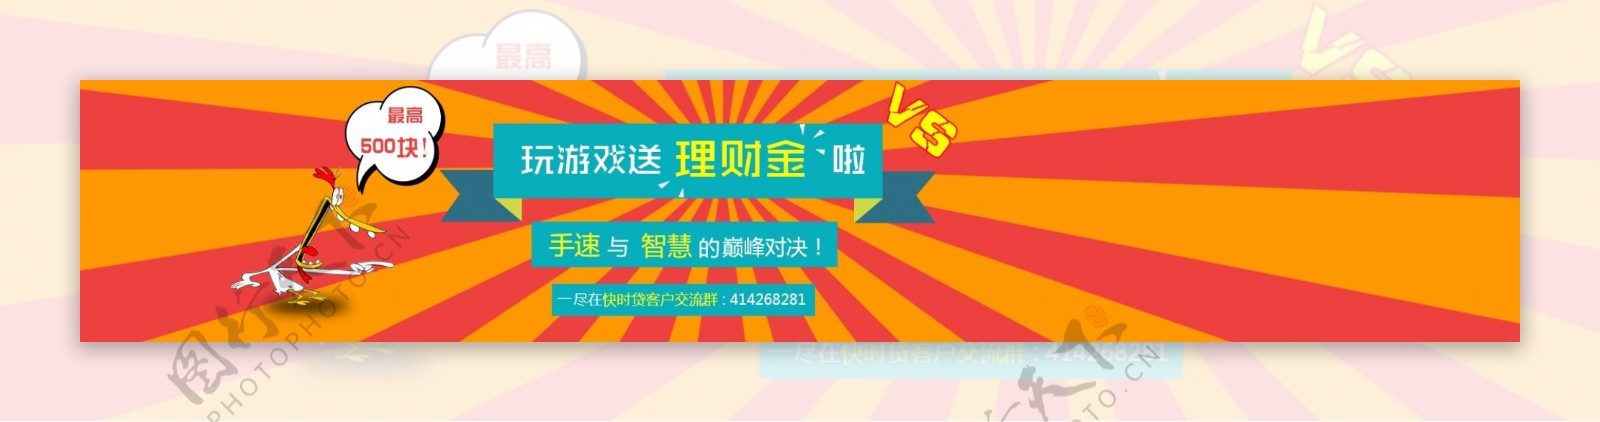 玩游戏送礼网贷群活动网站banner下载